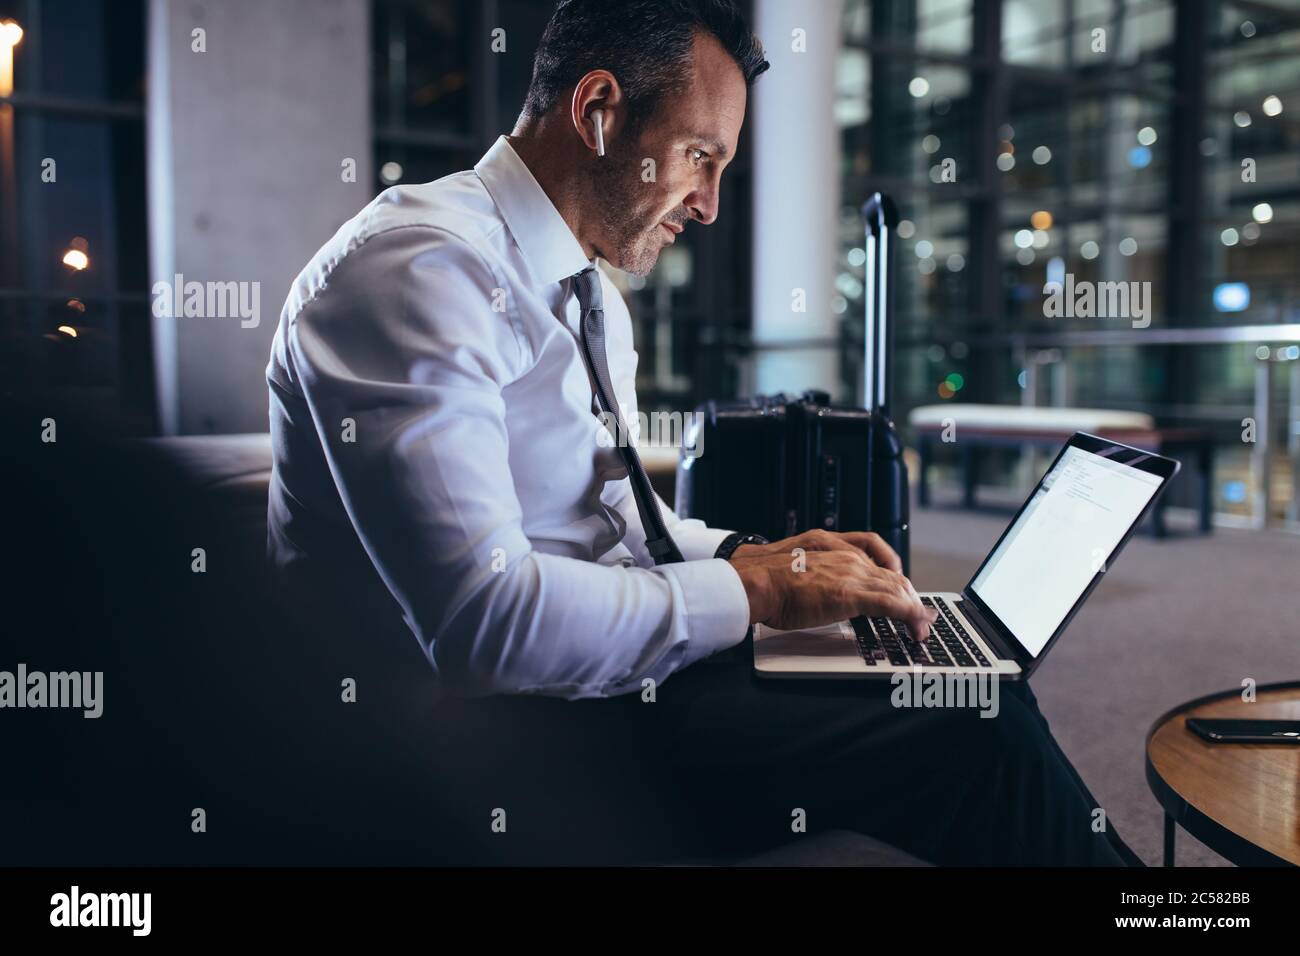 Uomo d'affari che lavora su un computer portatile mentre attende il suo volo in aeroporto. Uomo in abbigliamento da lavoro che utilizza un computer portatile nell'area d'attesa dell'aeroporto. Foto Stock